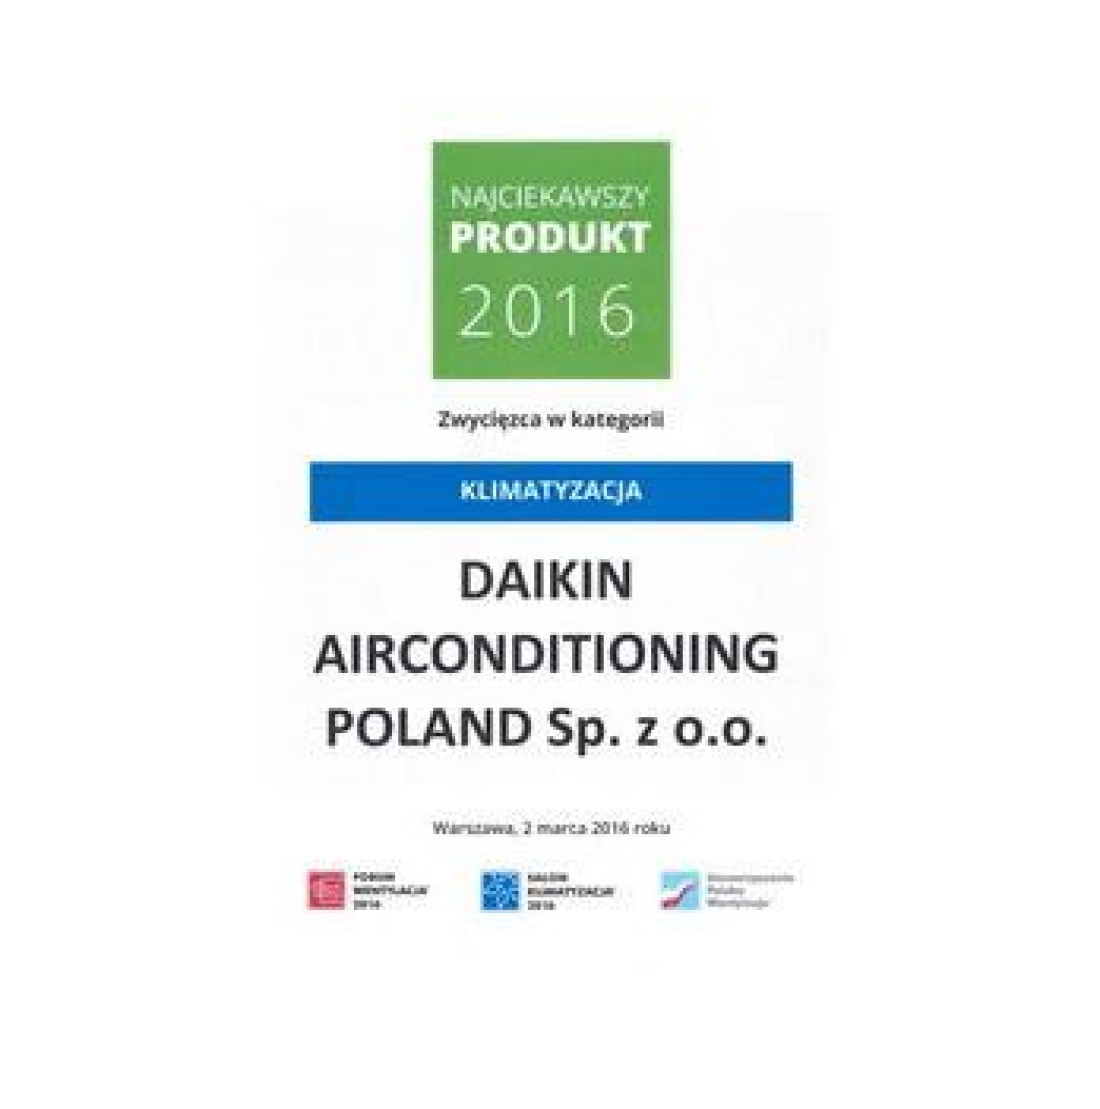 Najciekawszy Produkt 2016 dla systemu VRV-i firmy Daikin